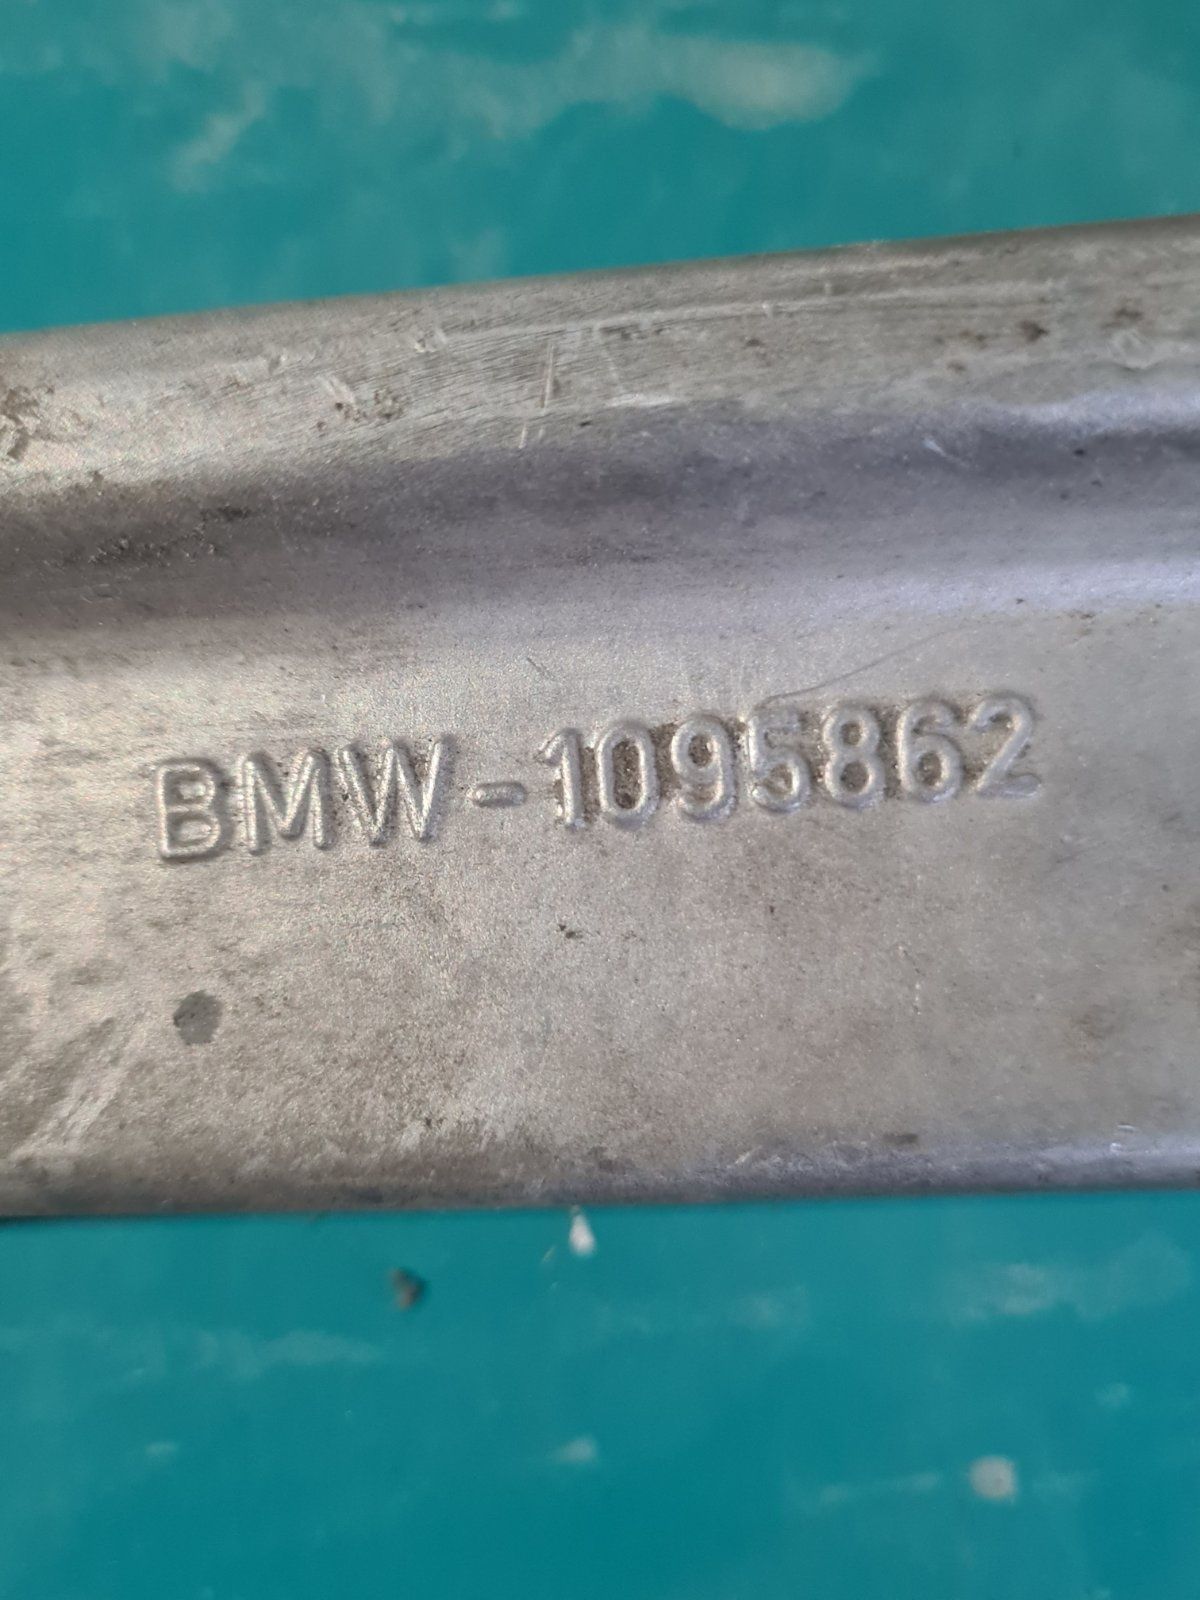 Теглич за BMW 1095862